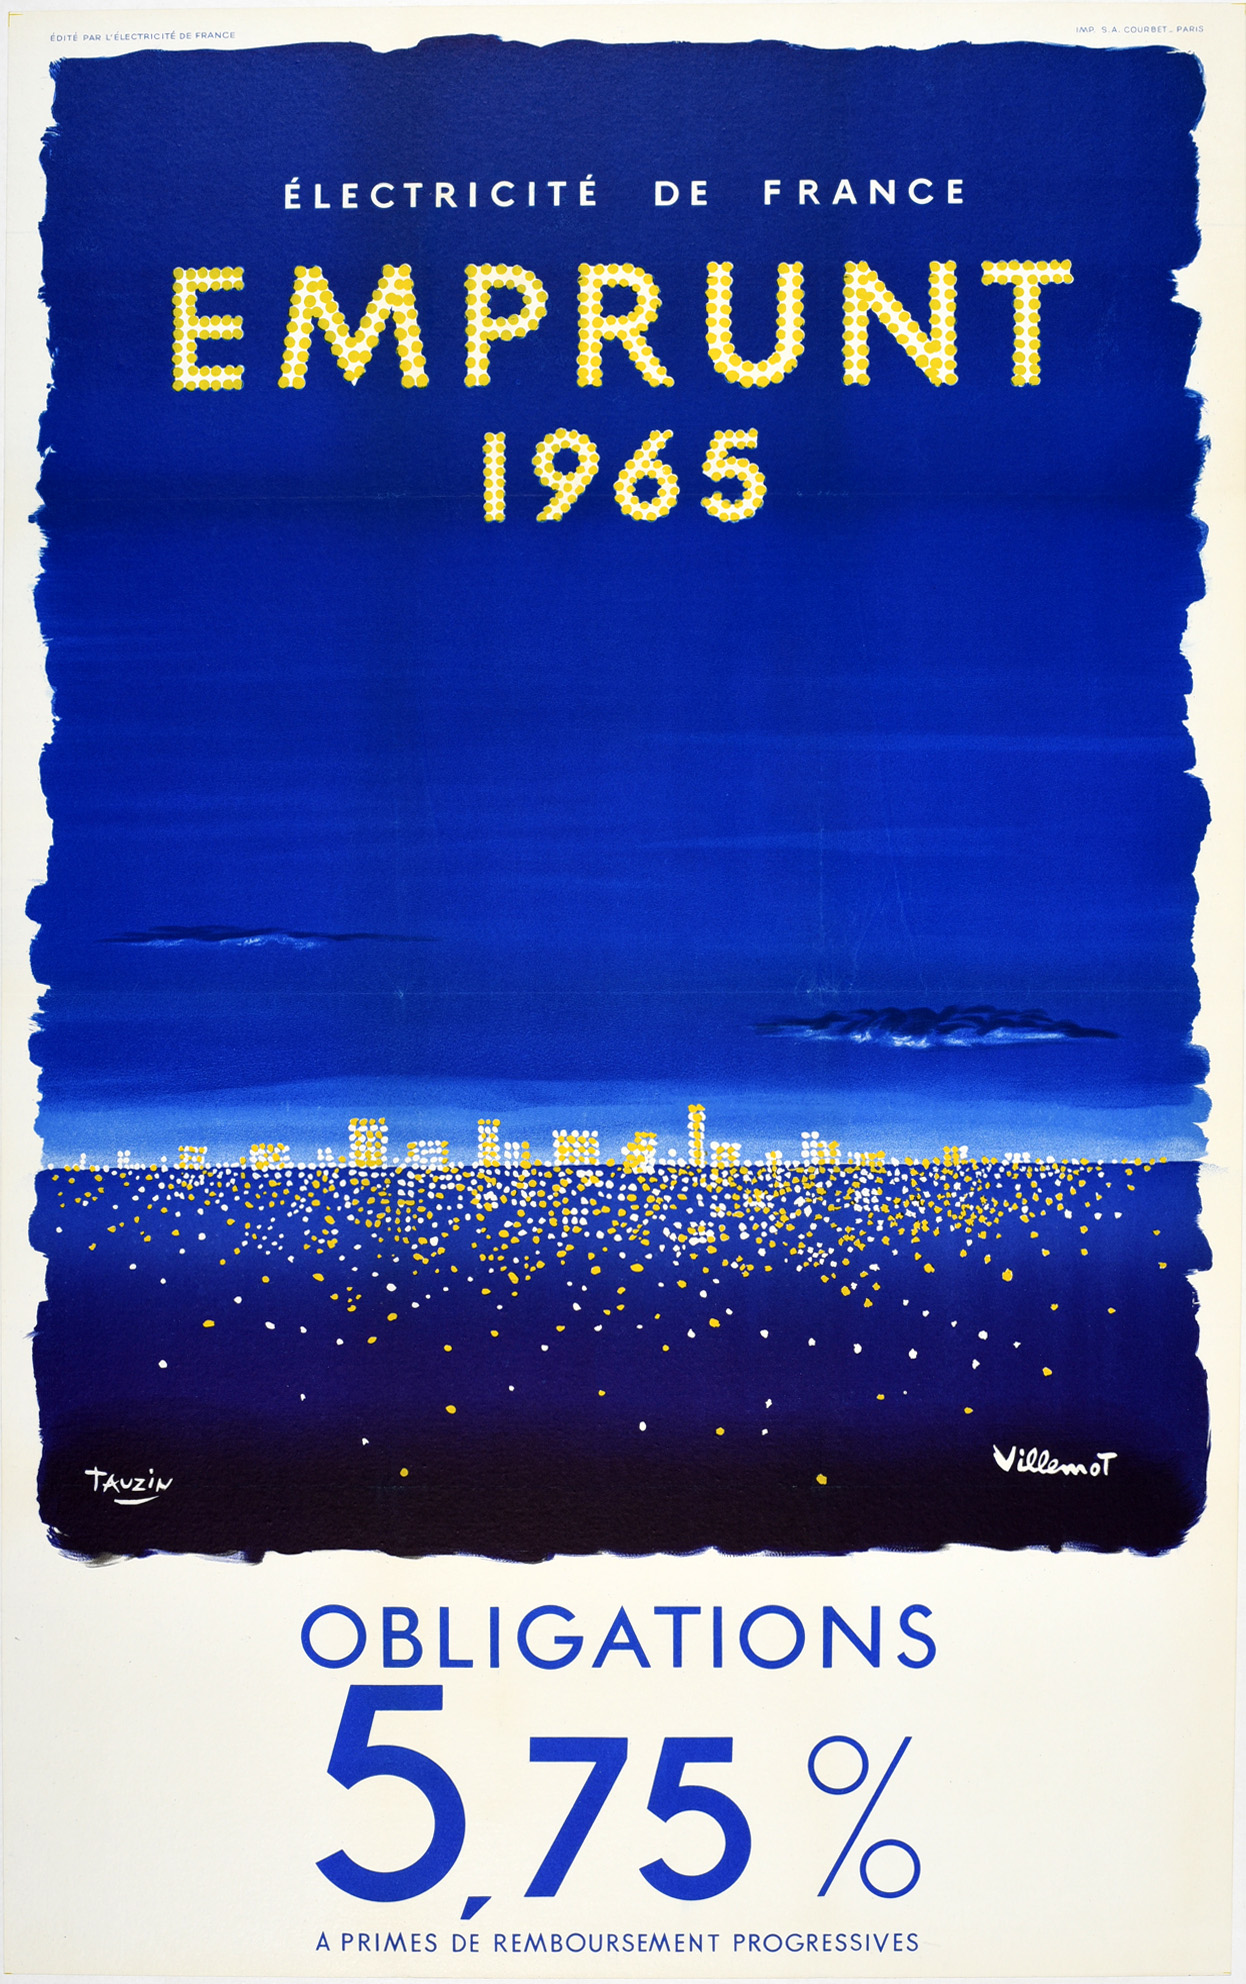 Advertising Poster Emprunt 1965 Electricity of France Loan Villemot